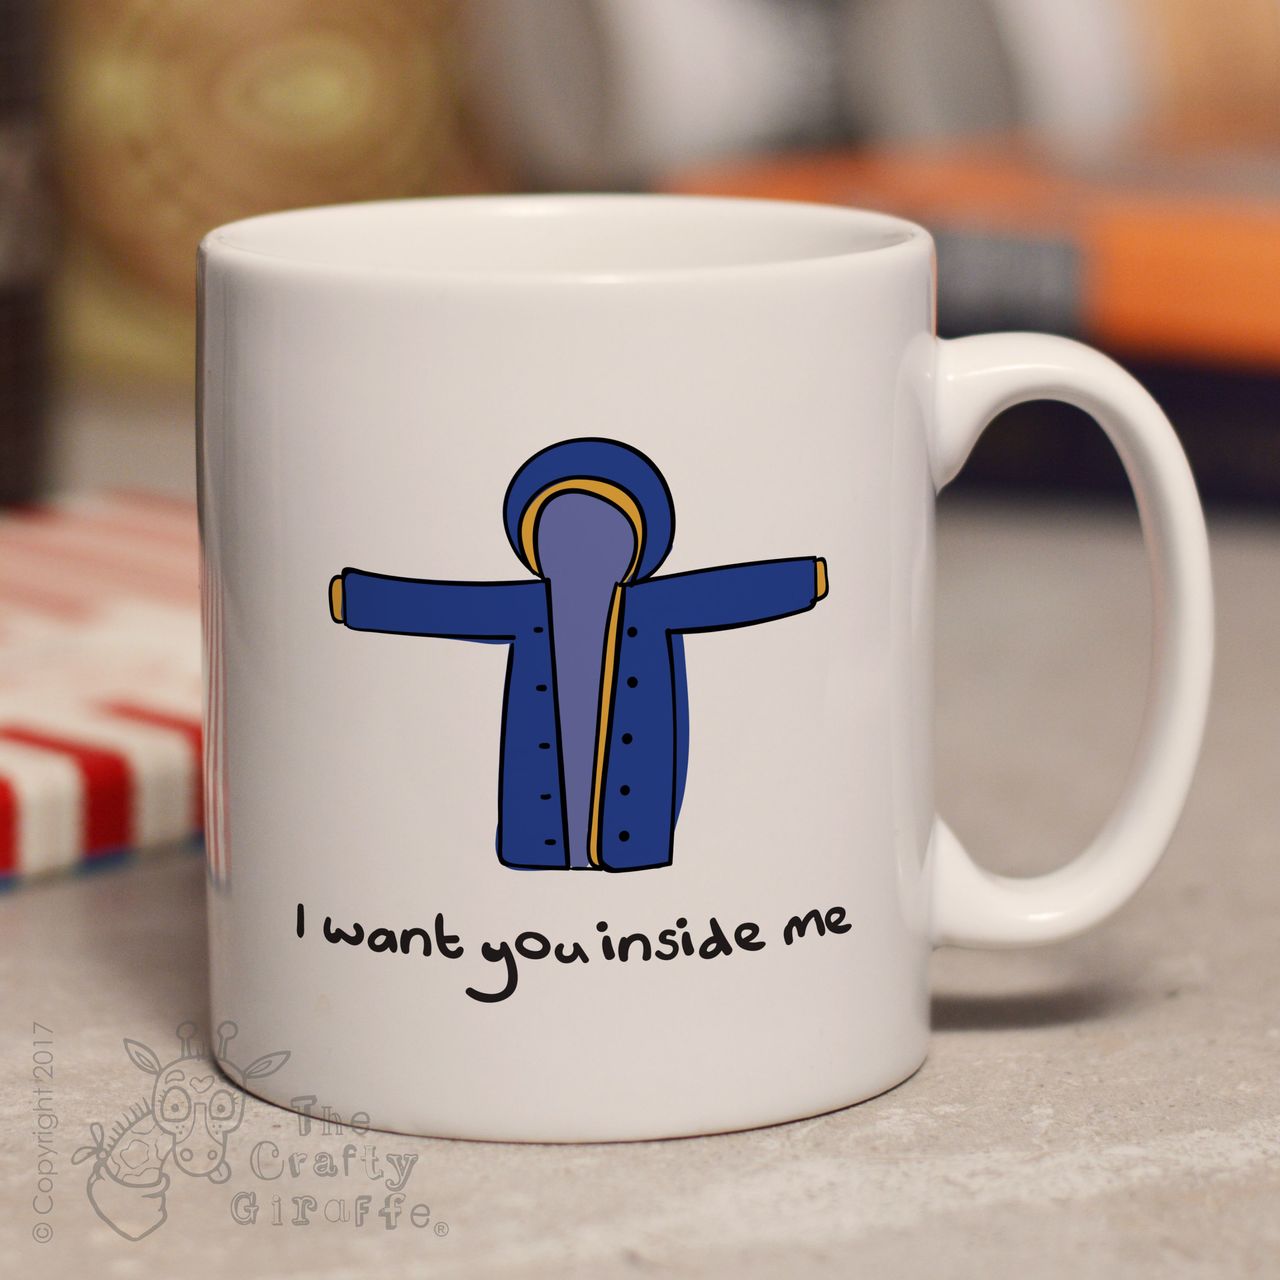 I want you inside me mug